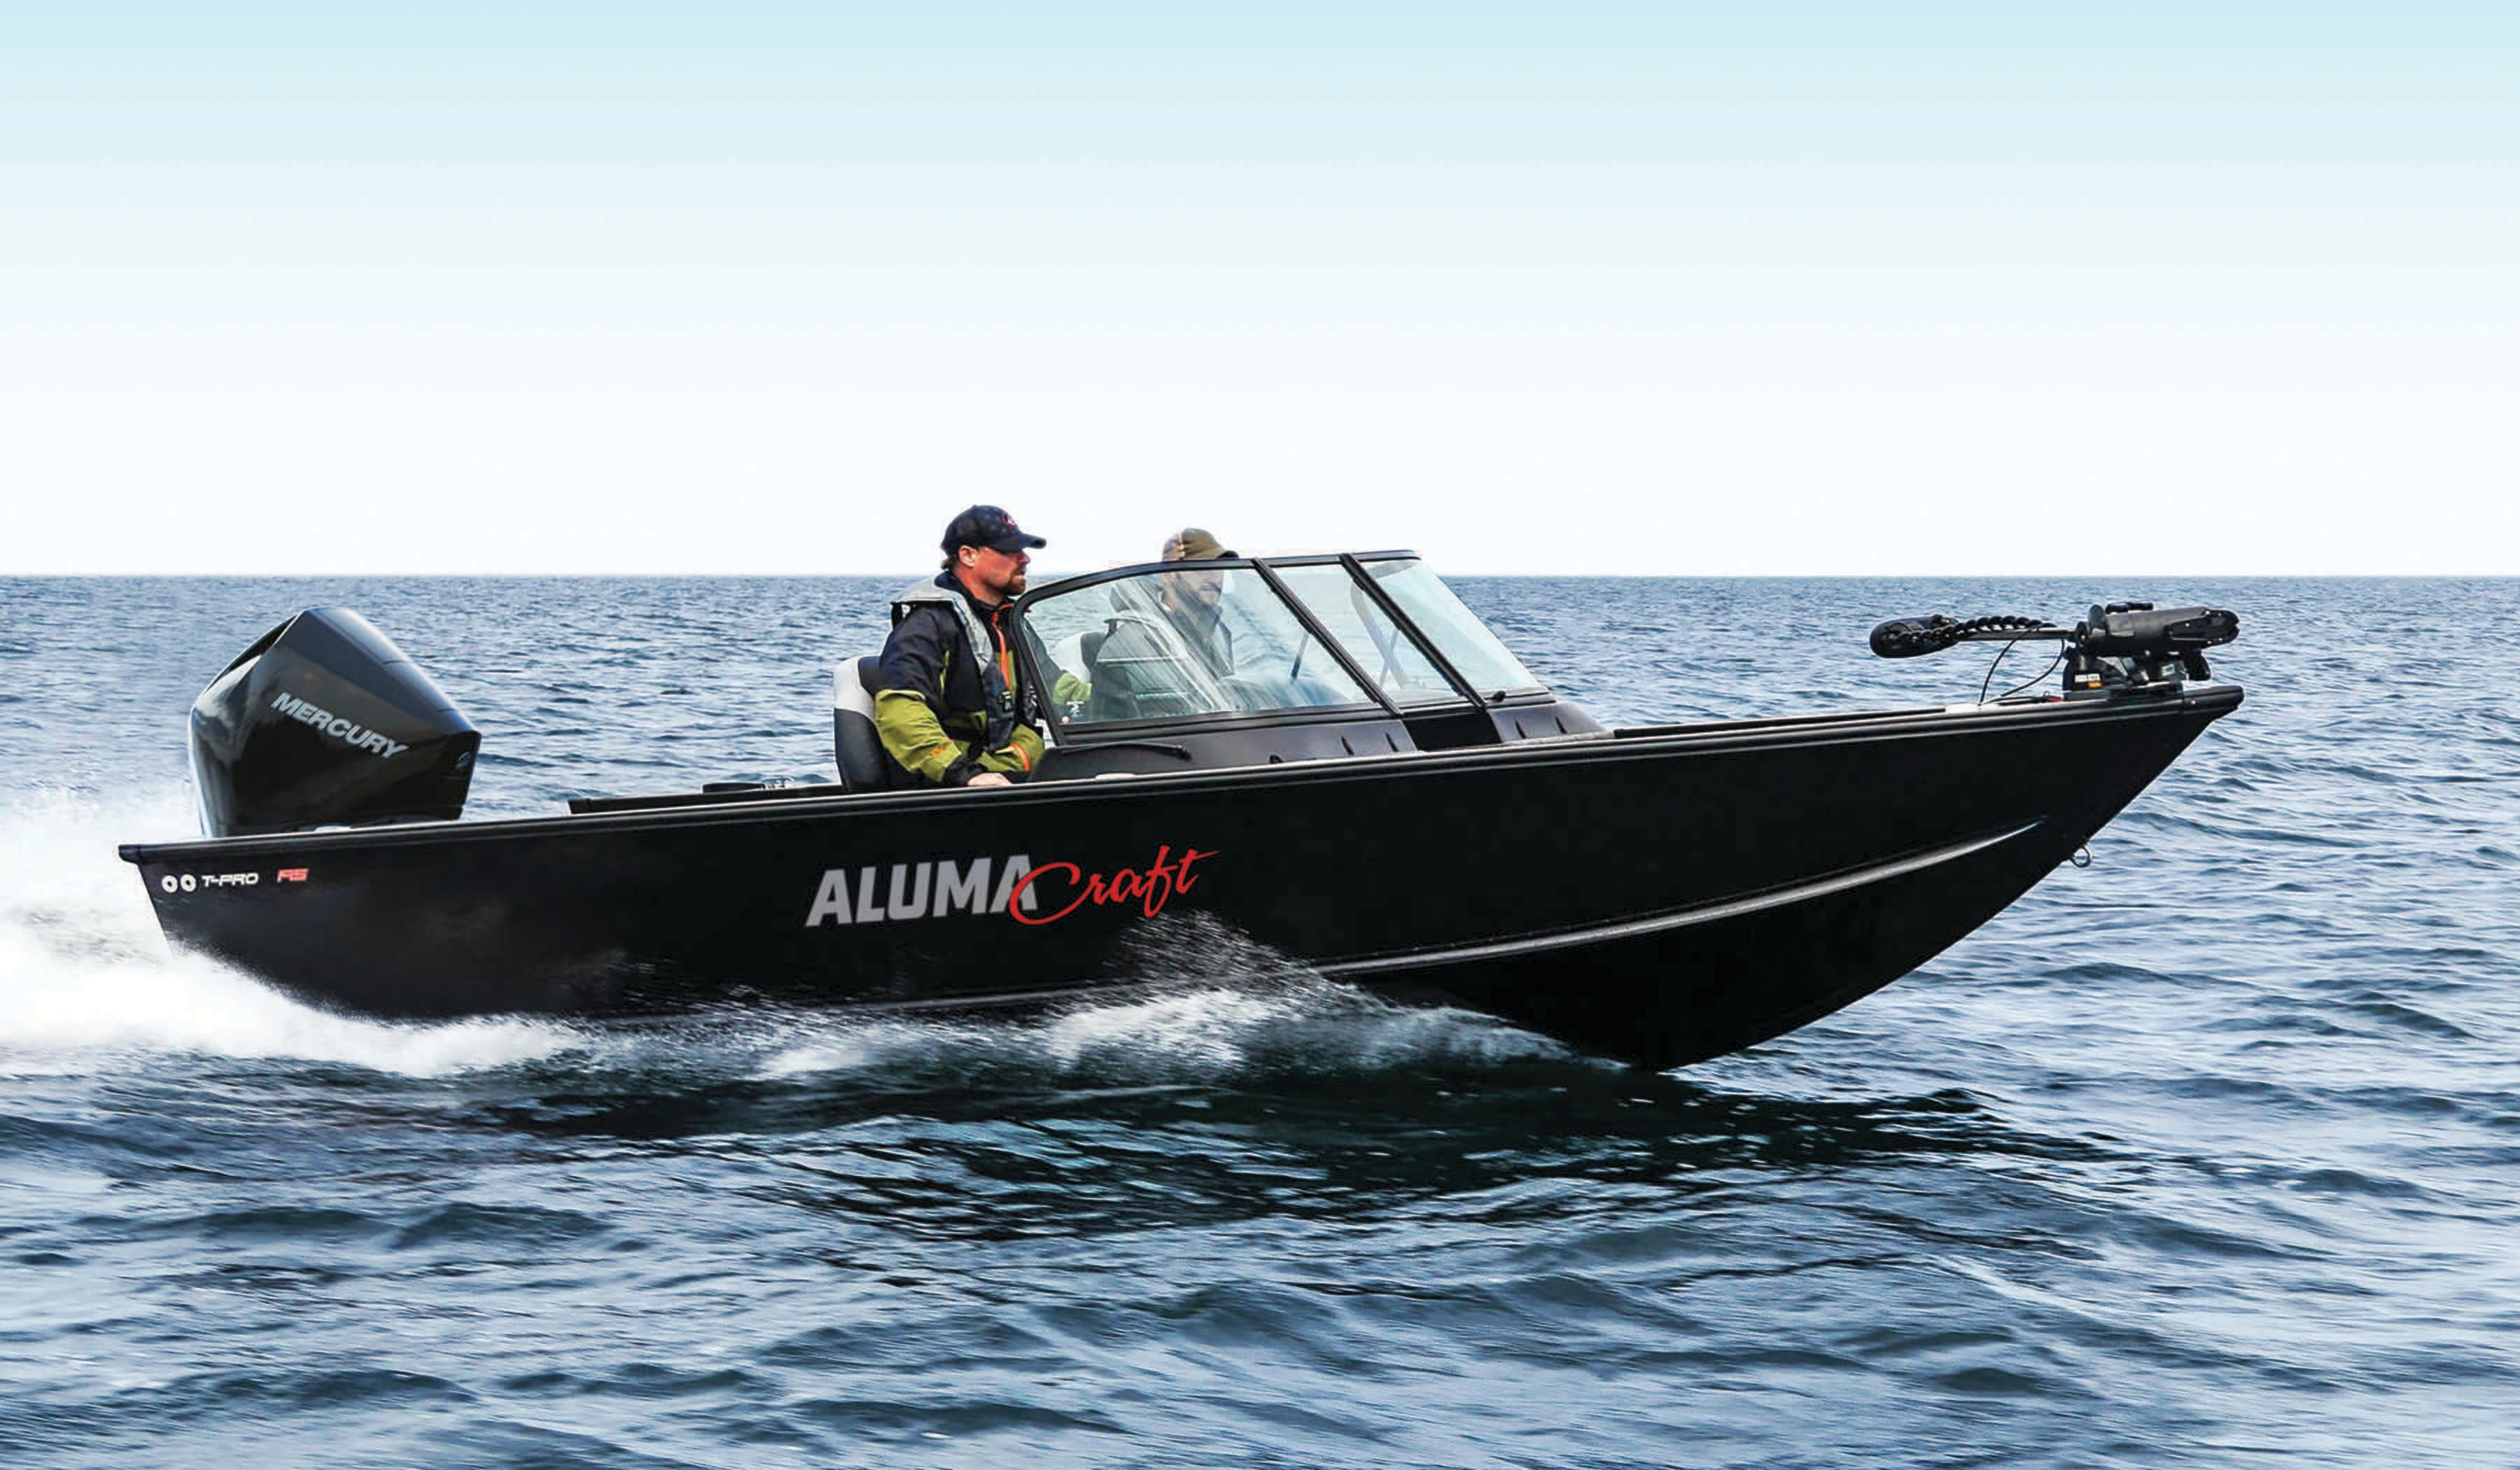 Hommes conduisant un bateau en aluminium noir